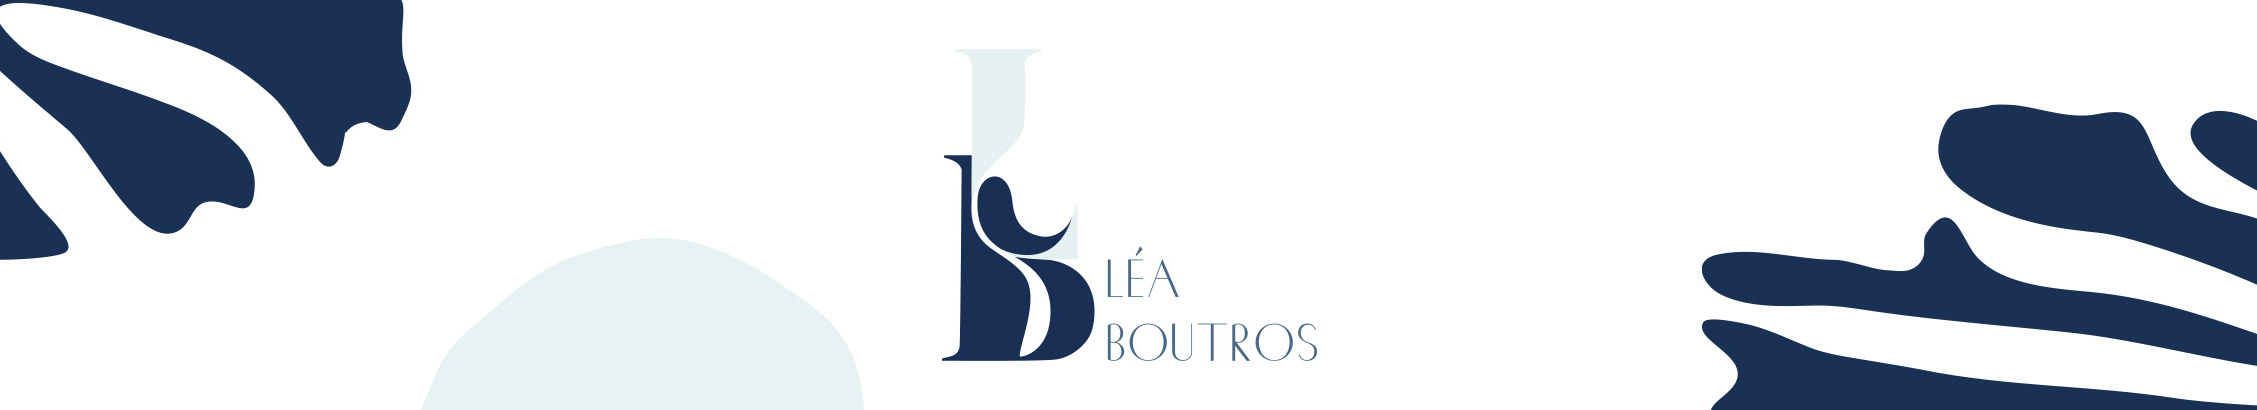 Lea Boutros's profile banner